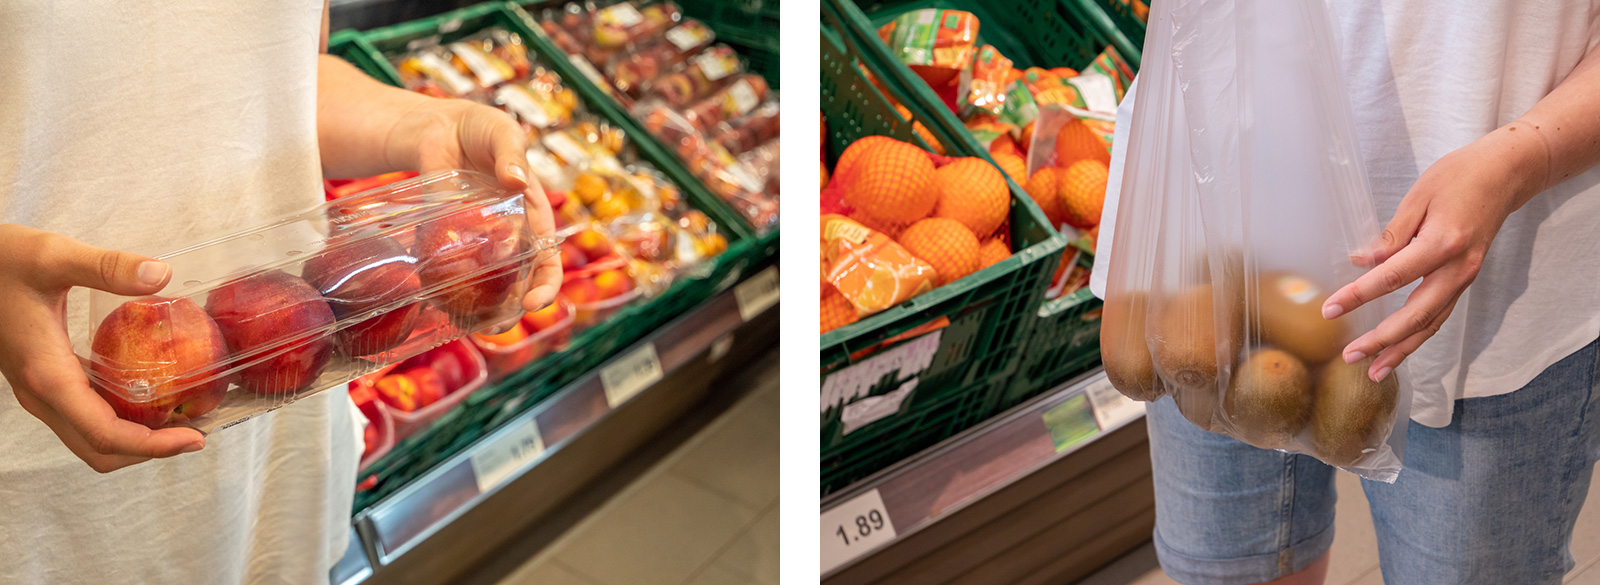 links: viel Plastik für wenig Obst, rechts: Plastiktüten sind das kleinere Übel